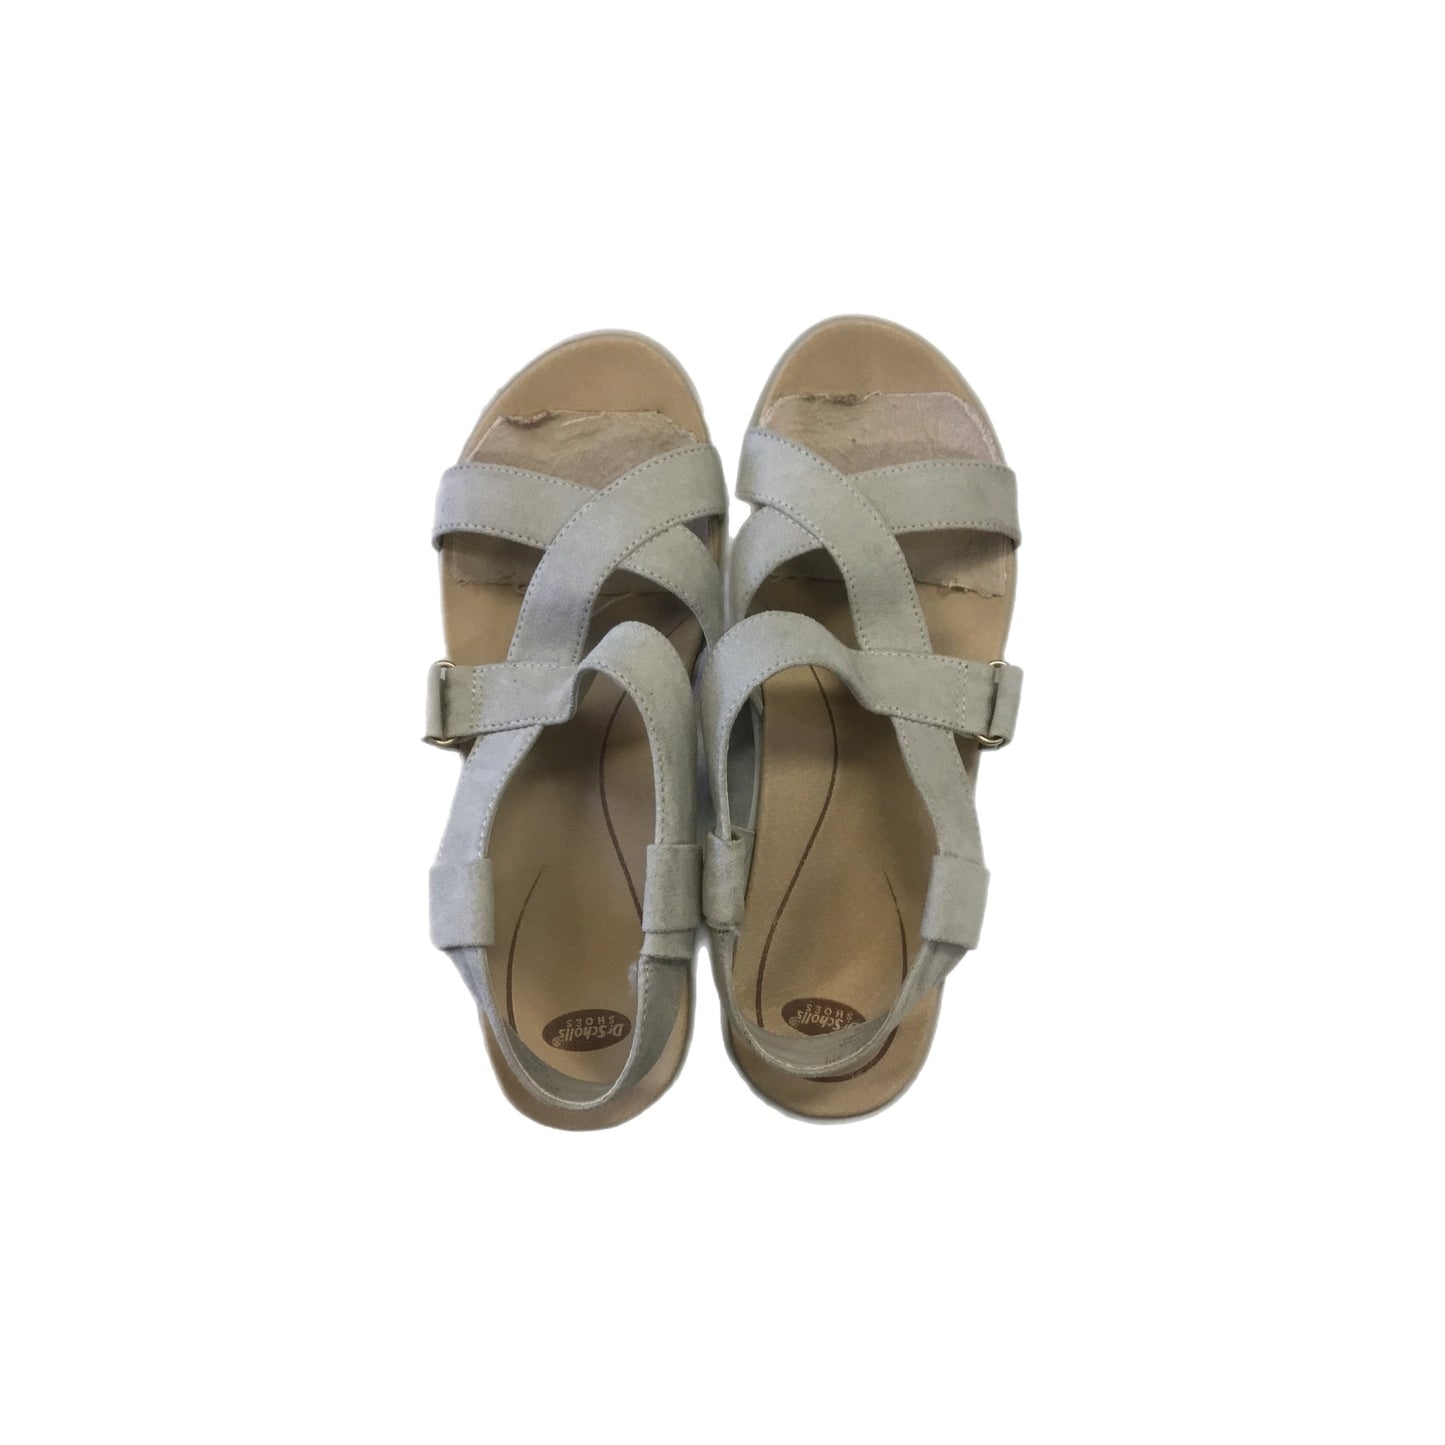 Sandals Flats By Dr Scholls  Size: 6